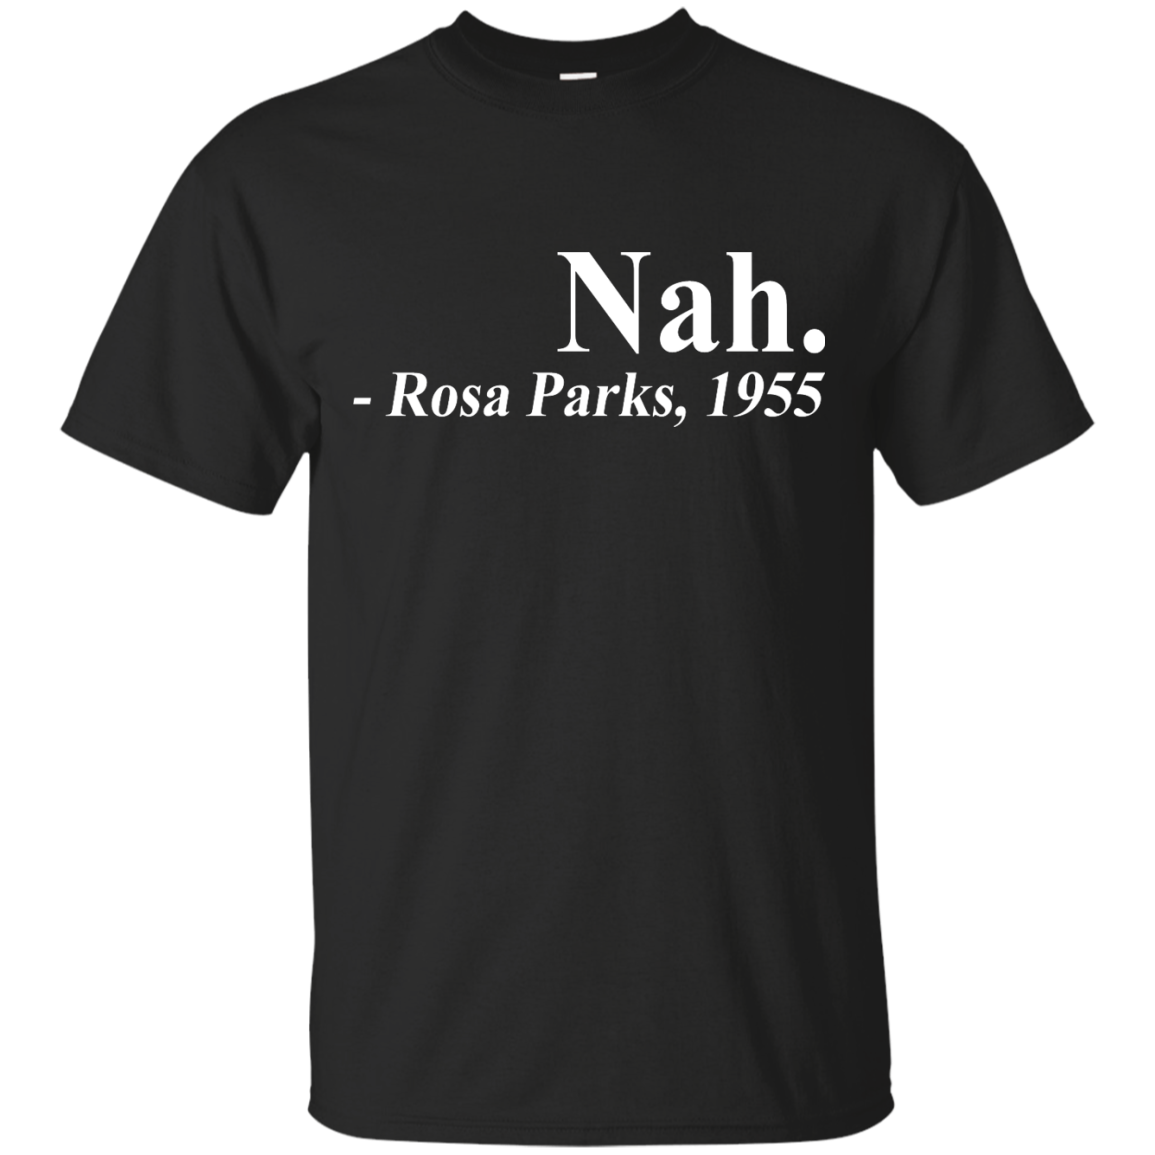 Nah rosa parks 1955 shirt, hoodie, tank